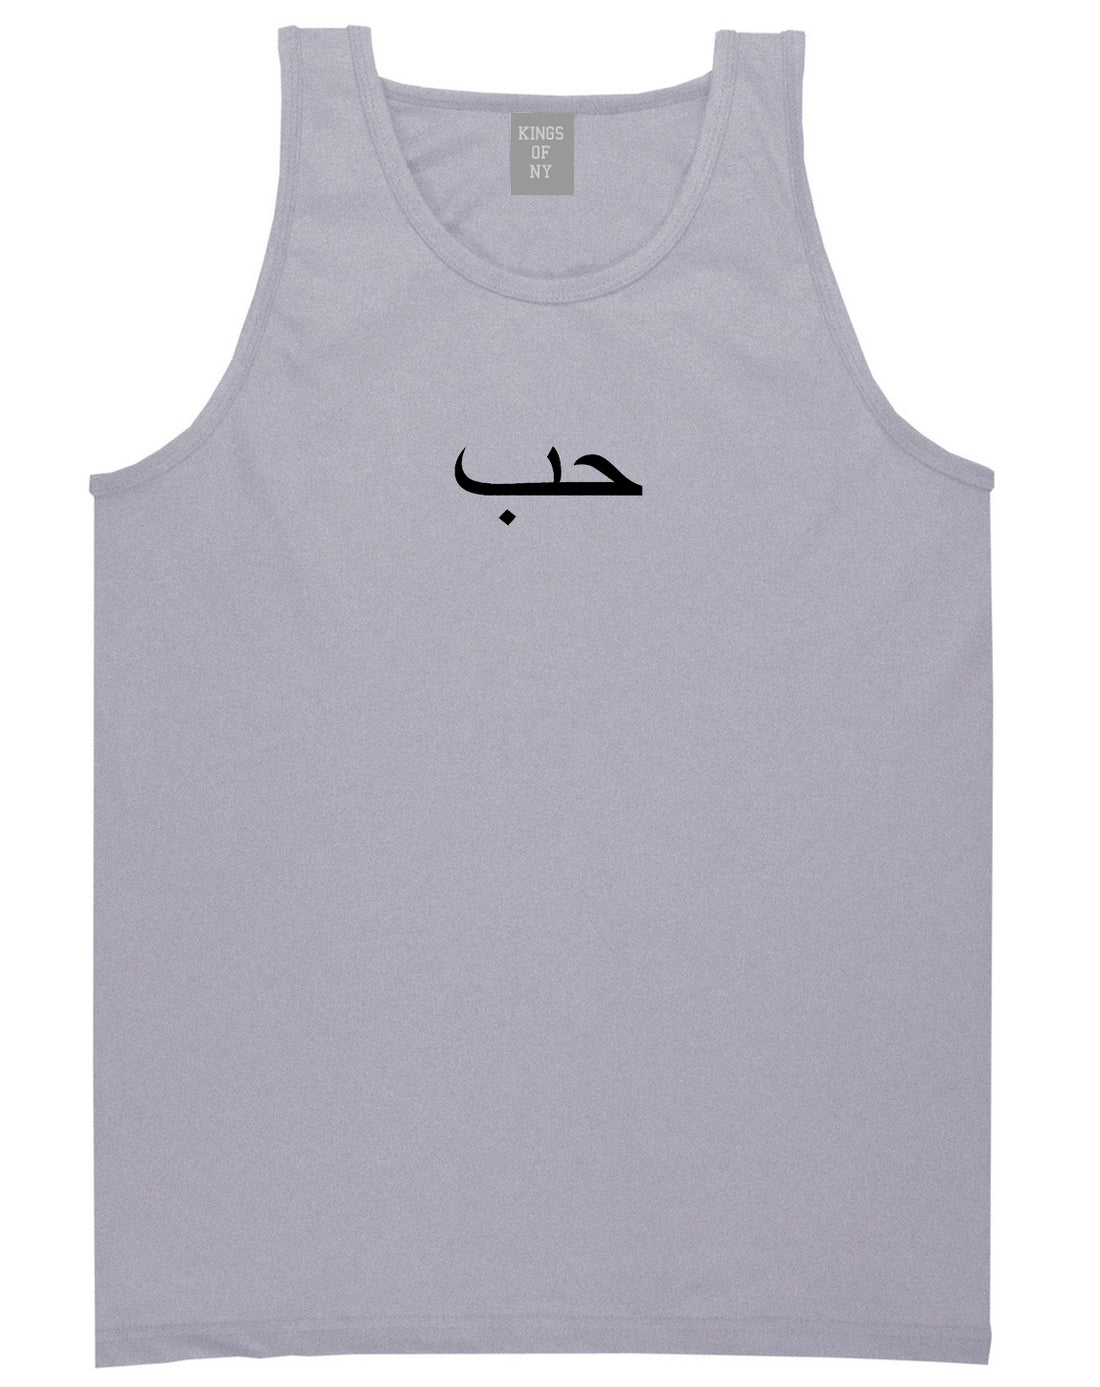 Arabic Love Mens Tank Top Shirt Grey by Kings Of NY